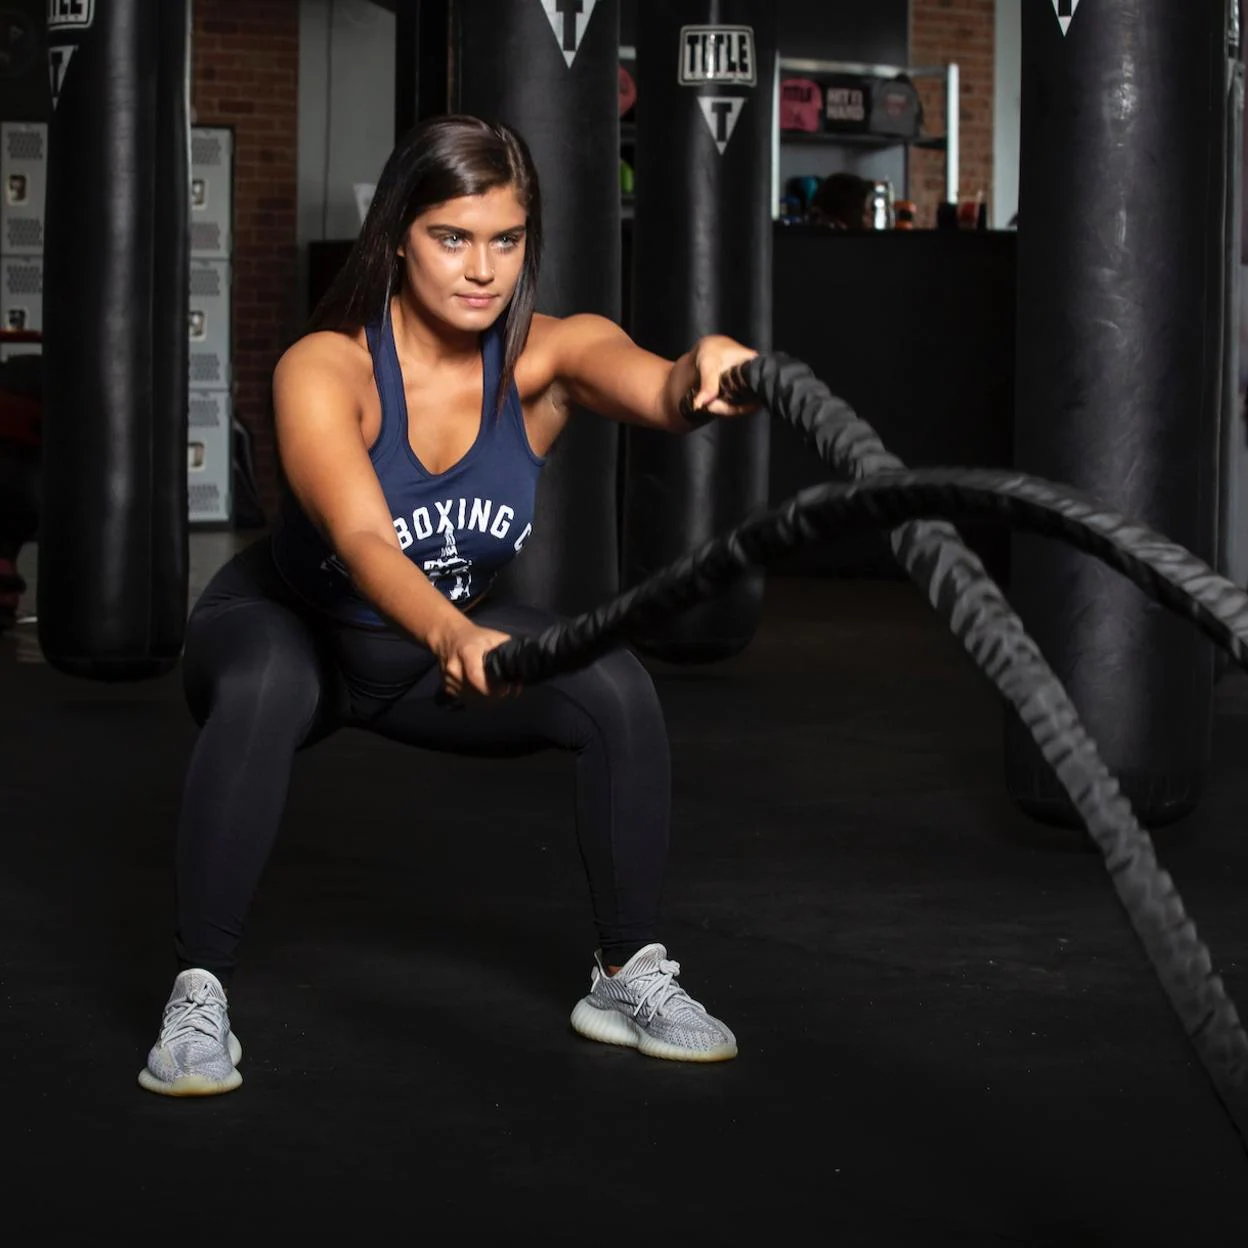 fitness: Battle rope, el ejercicio viral para adelgazar y tonificar